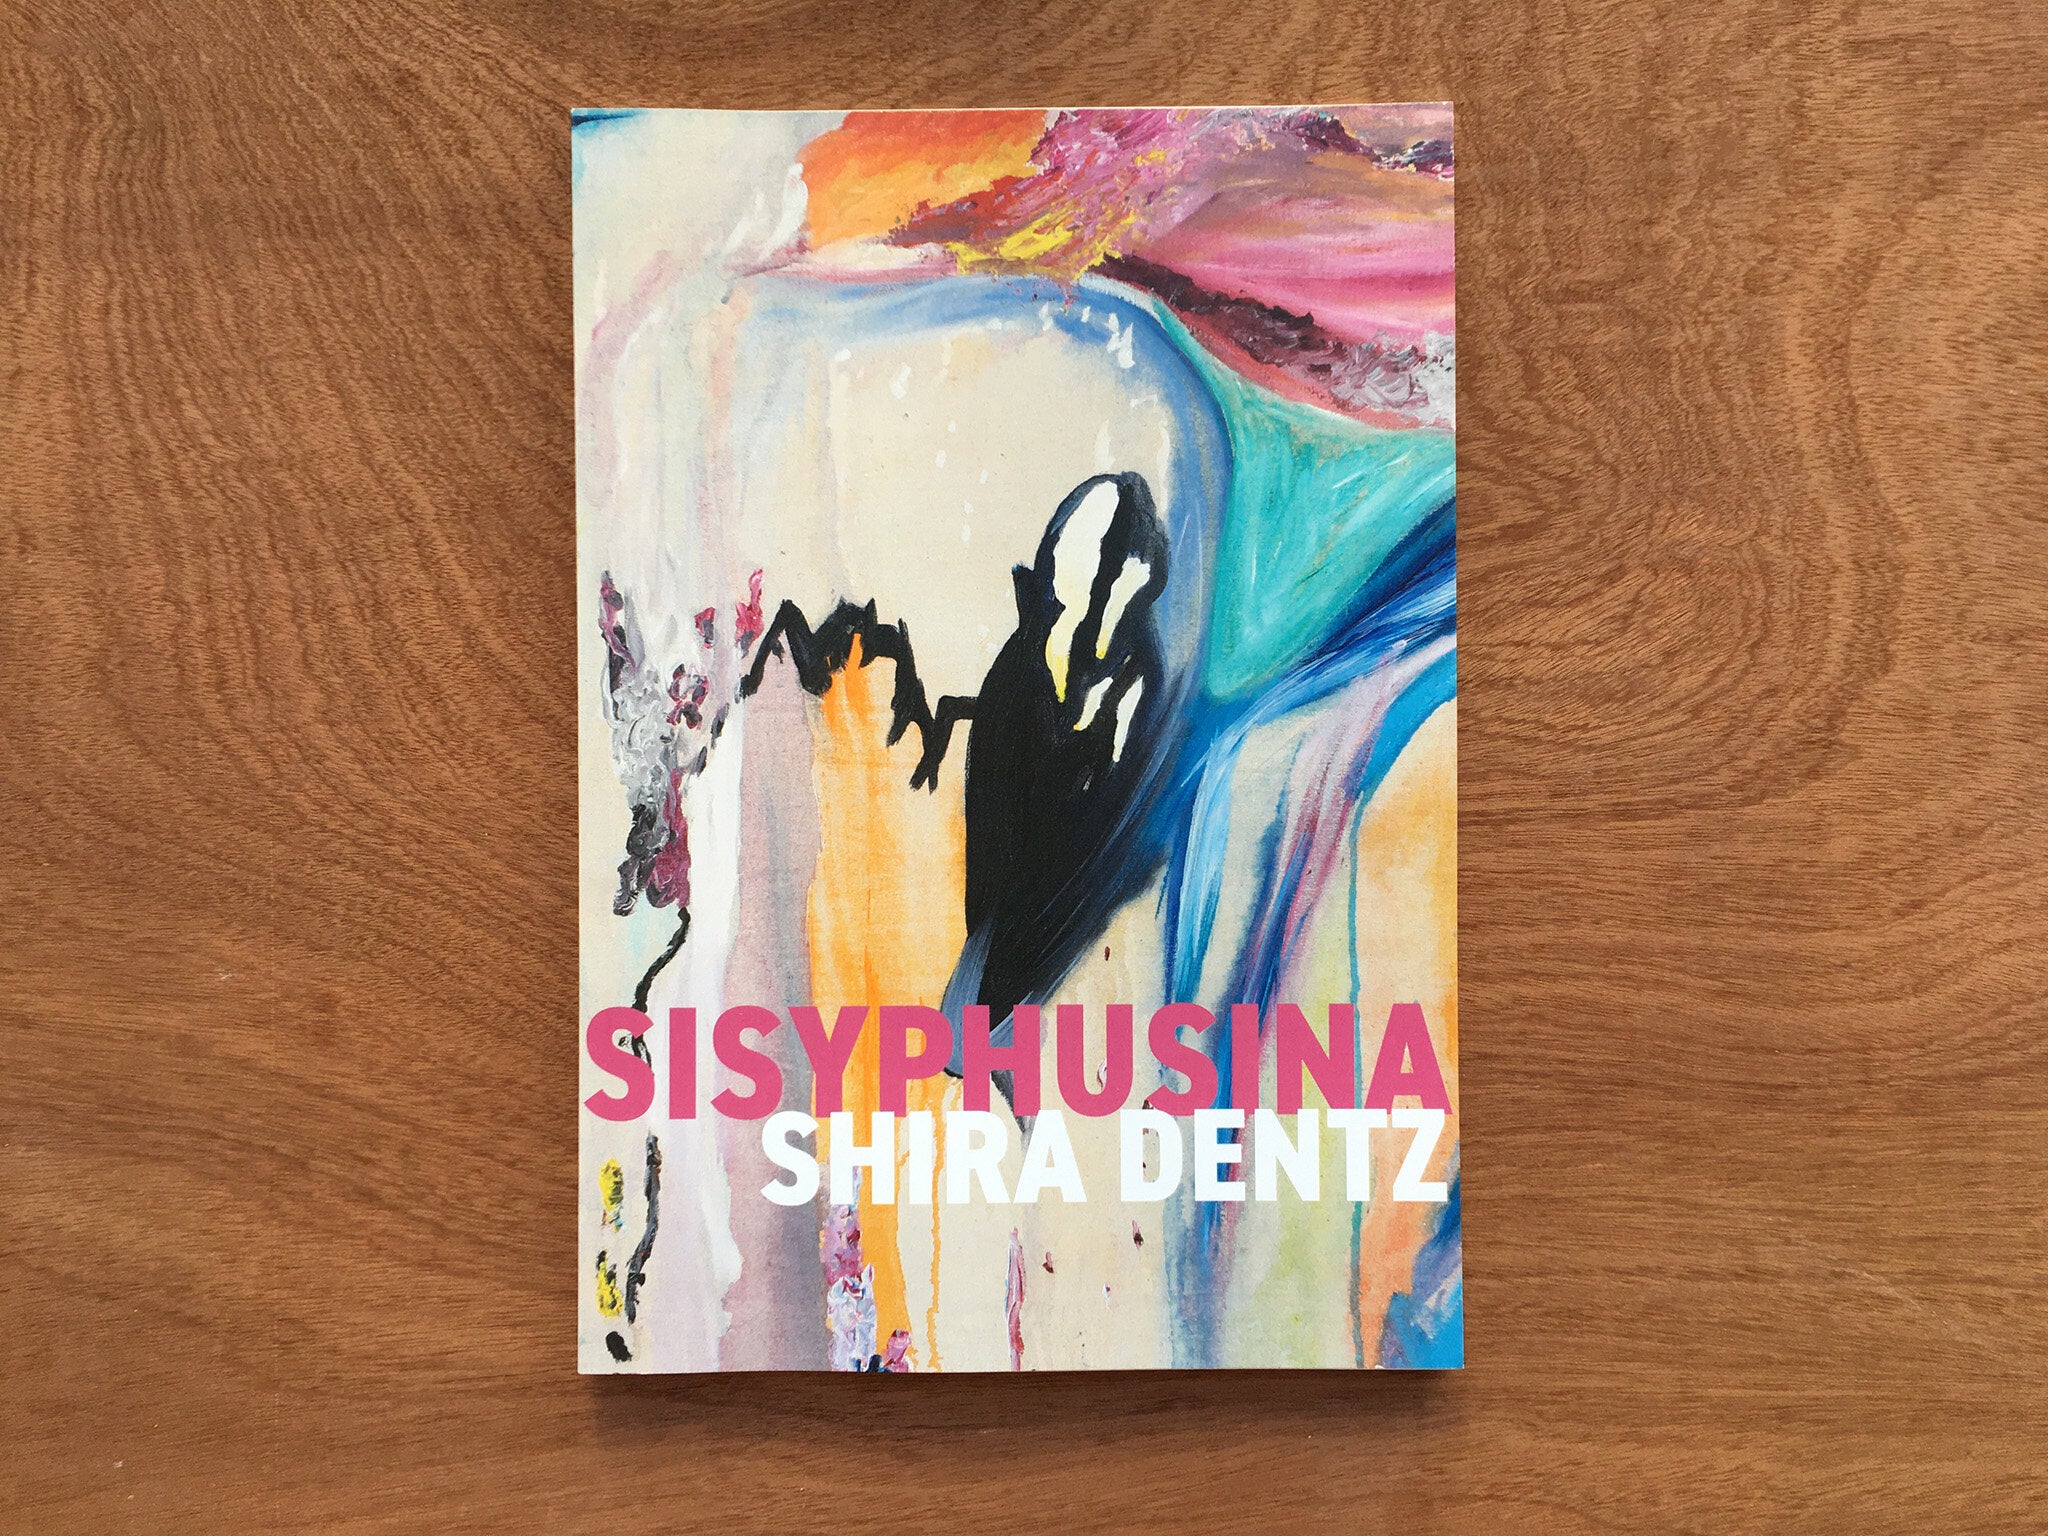 SISYPHUSINA by Shira Dentz